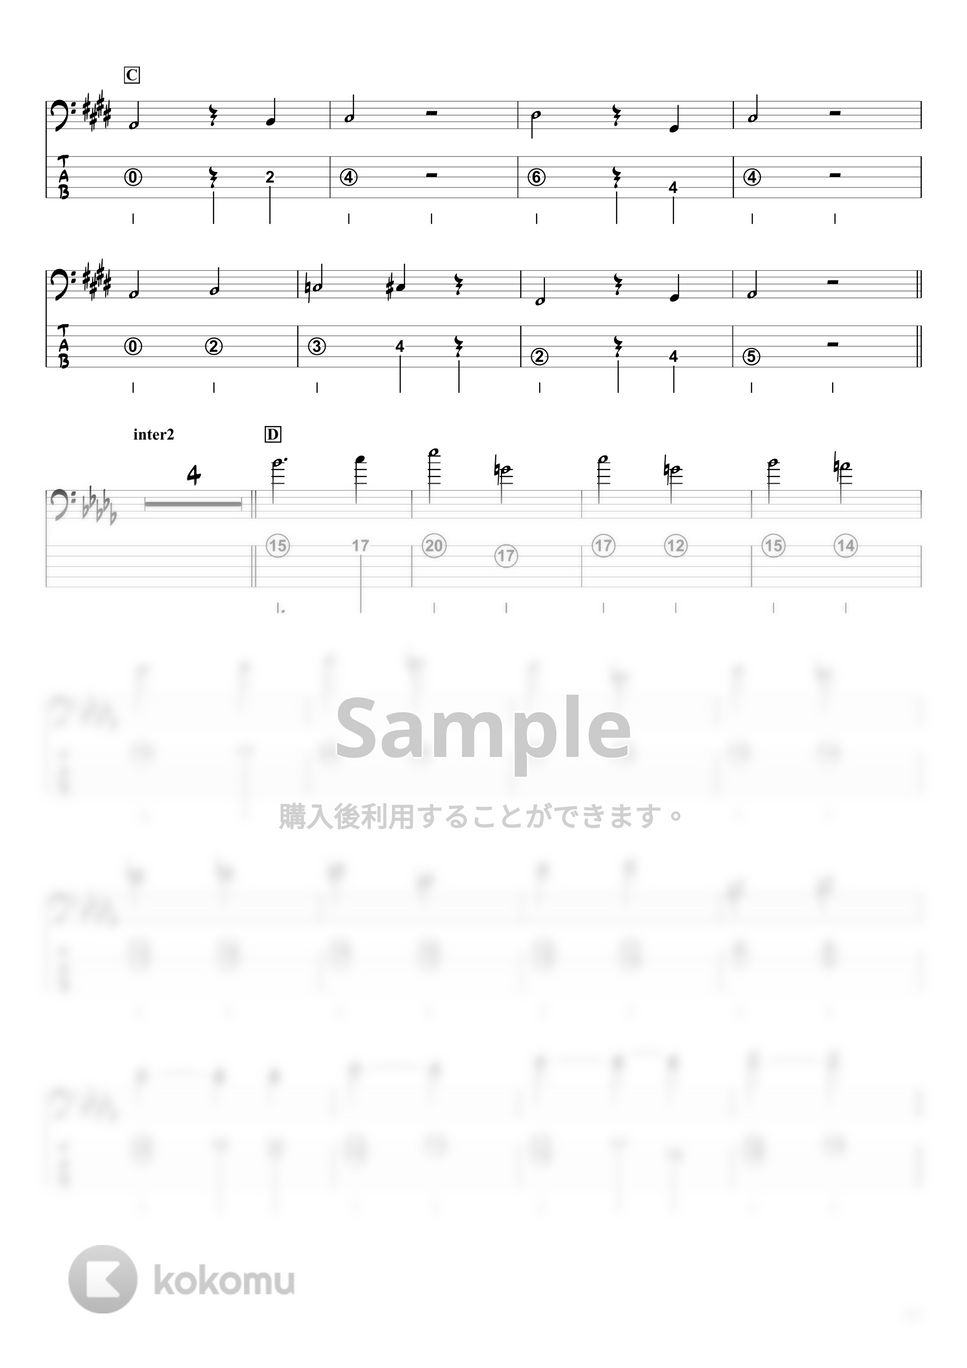 米津玄師 - M八七 (ベースTAB譜☆5弦ベース対応) by swbass